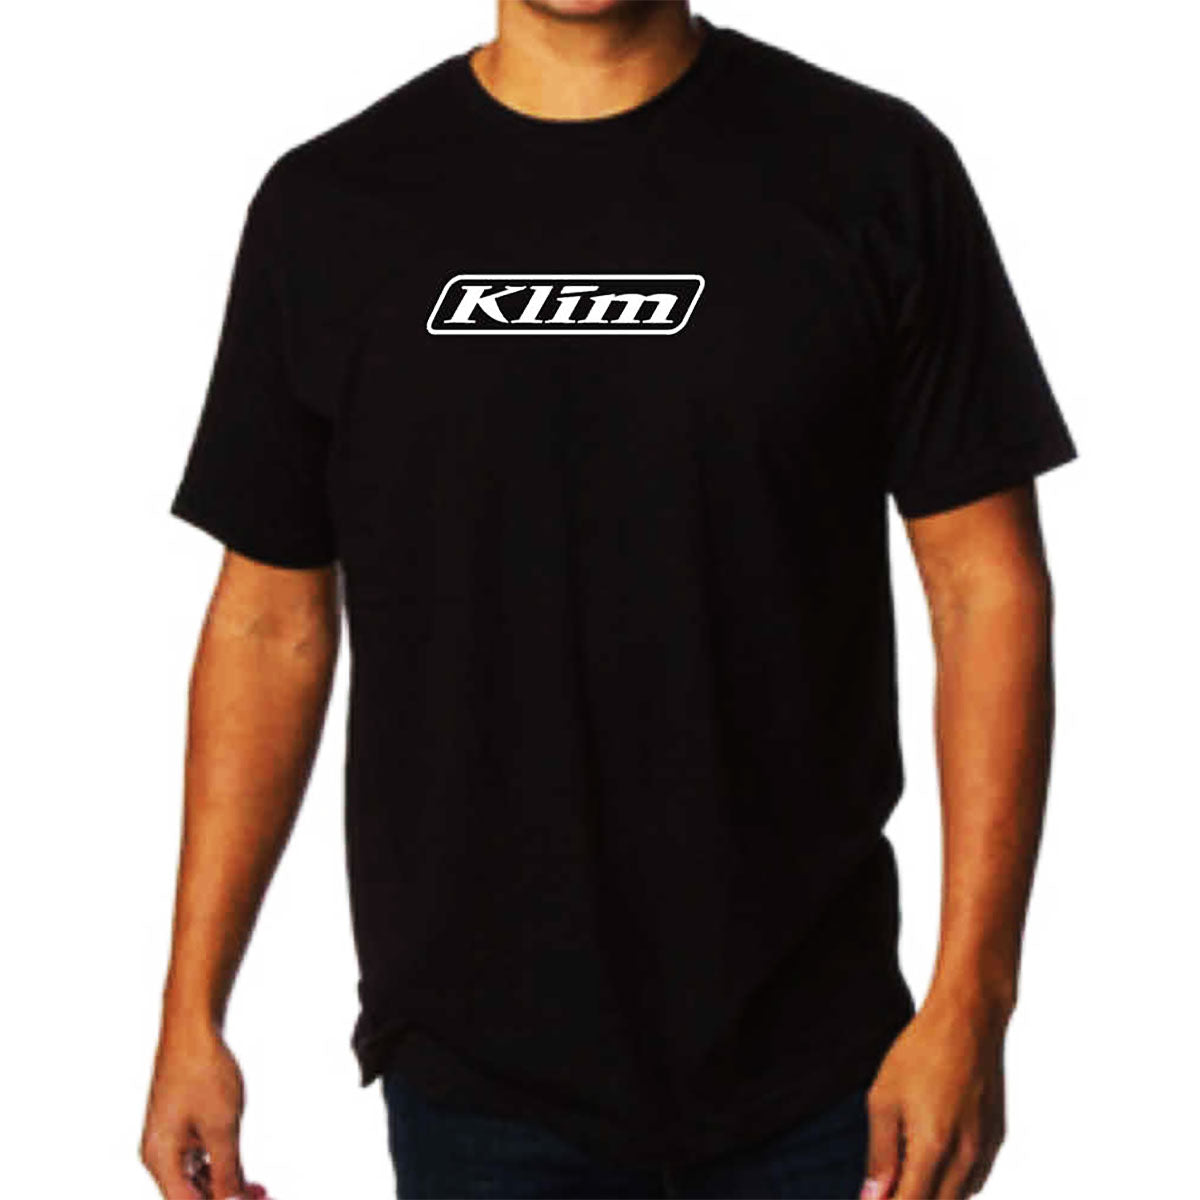 Klim Burst Men's Short-Sleeve Shirts-3517